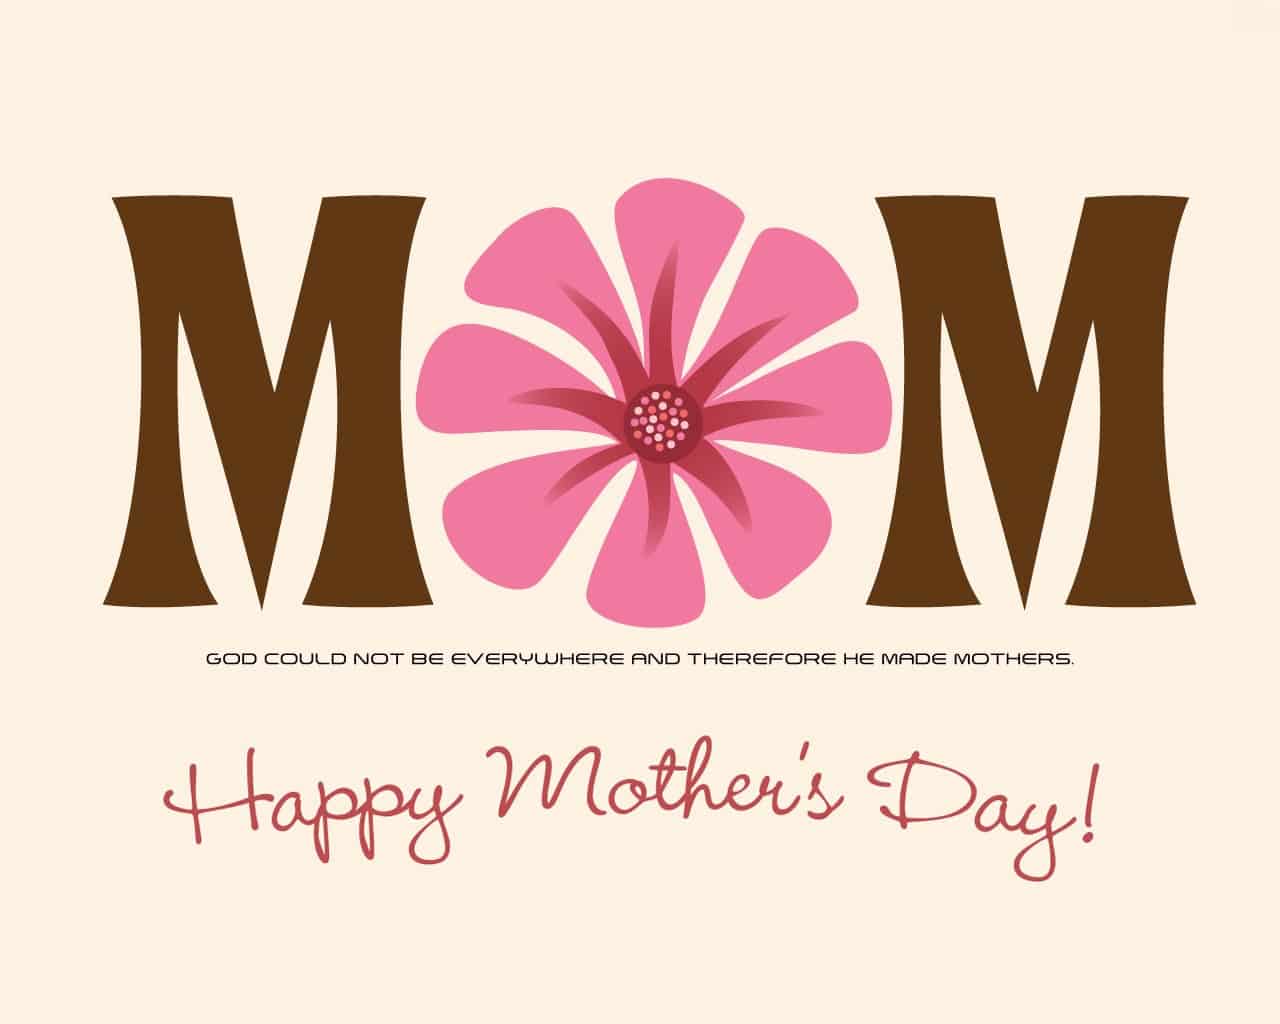 صور وكروت وبطاقات معايدة لعيد الأم - Happy Mother's Day 2020 18